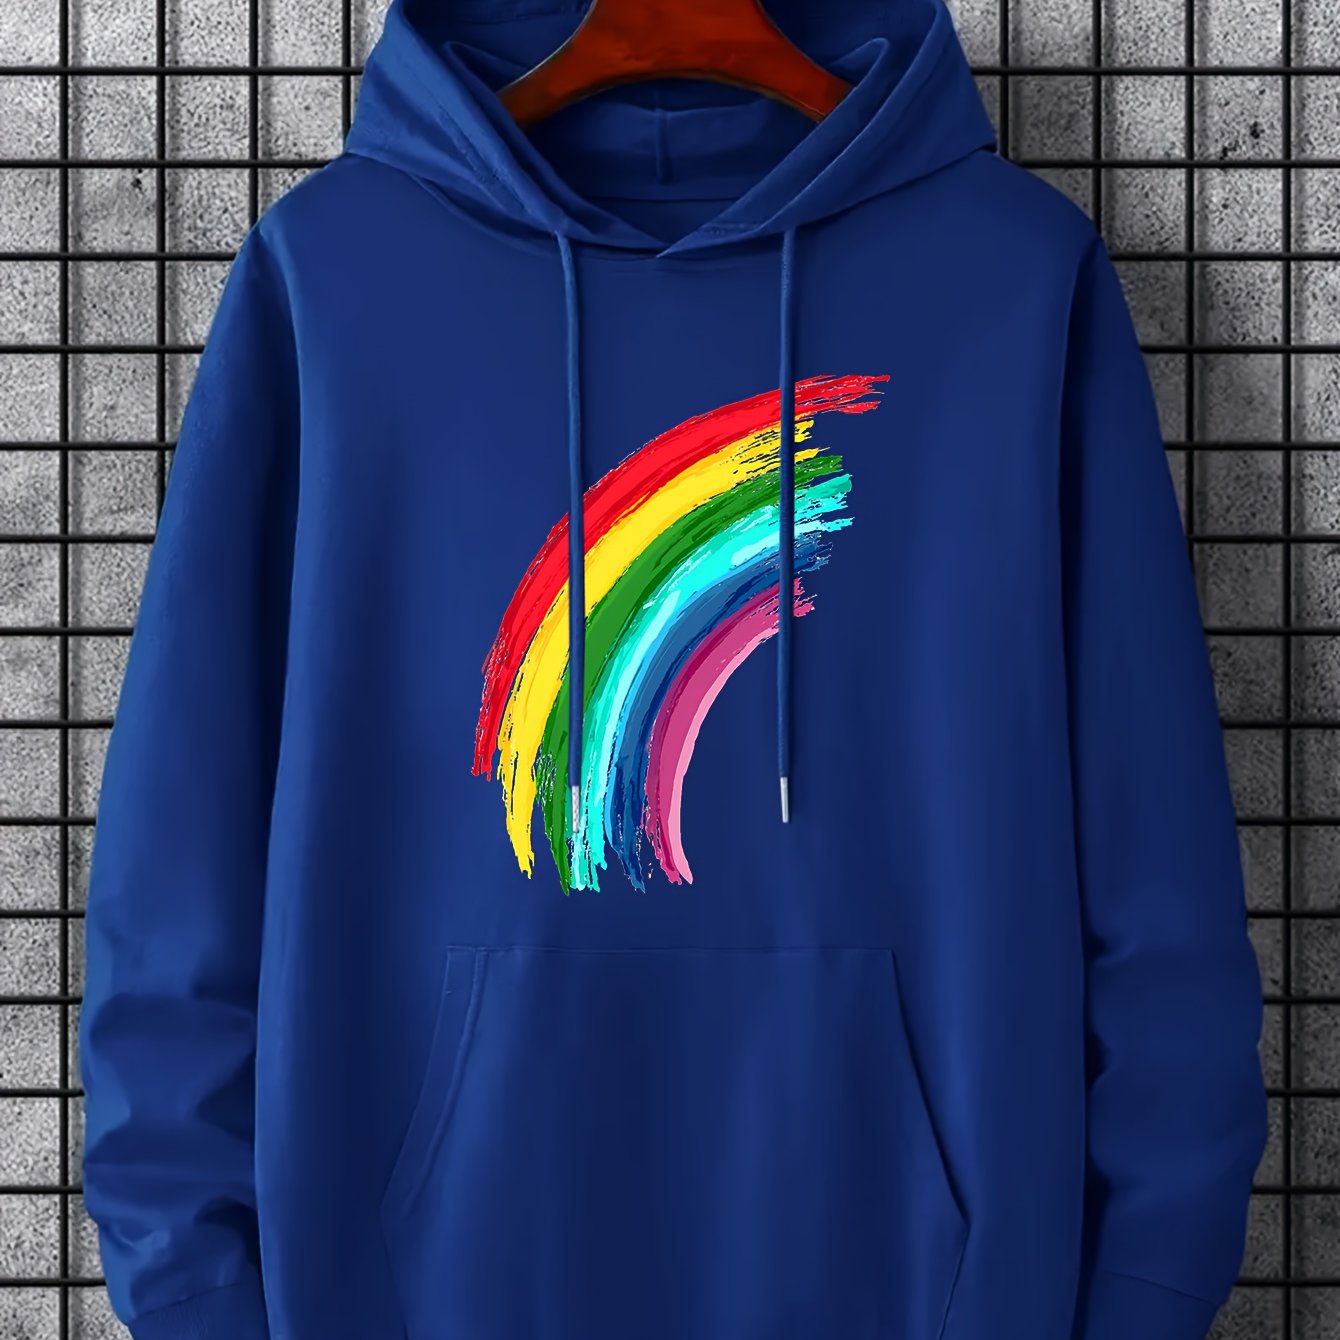 Rainbow hoodie  Kathmandu funky hoodie